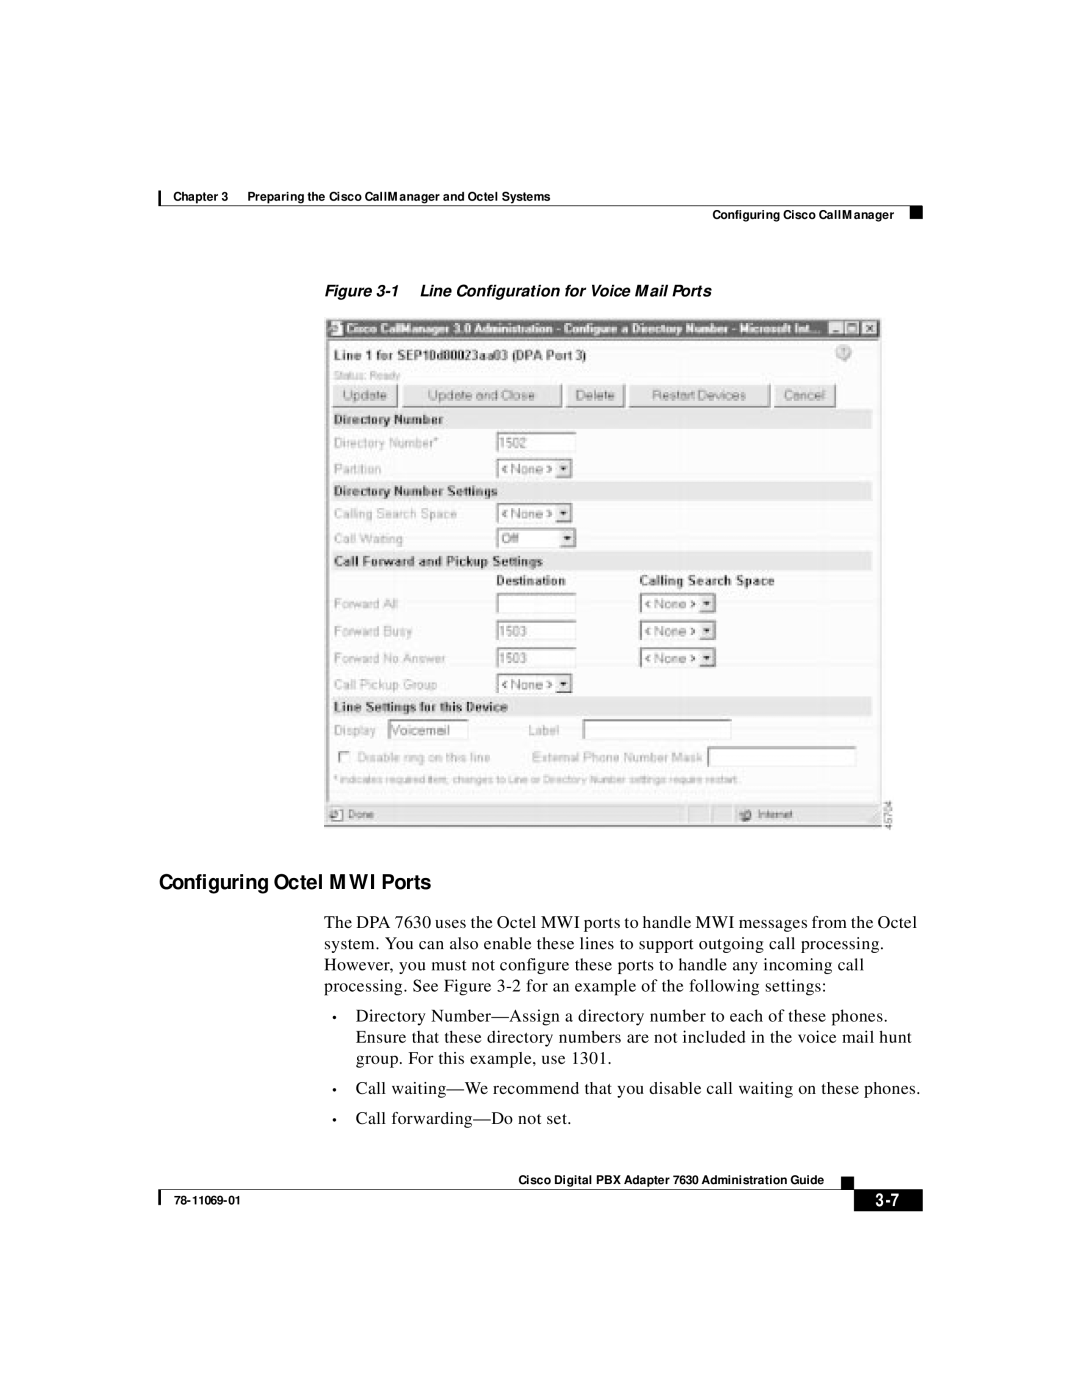 3Com 78-11069-01 manual Configuring Octel MWI Ports 